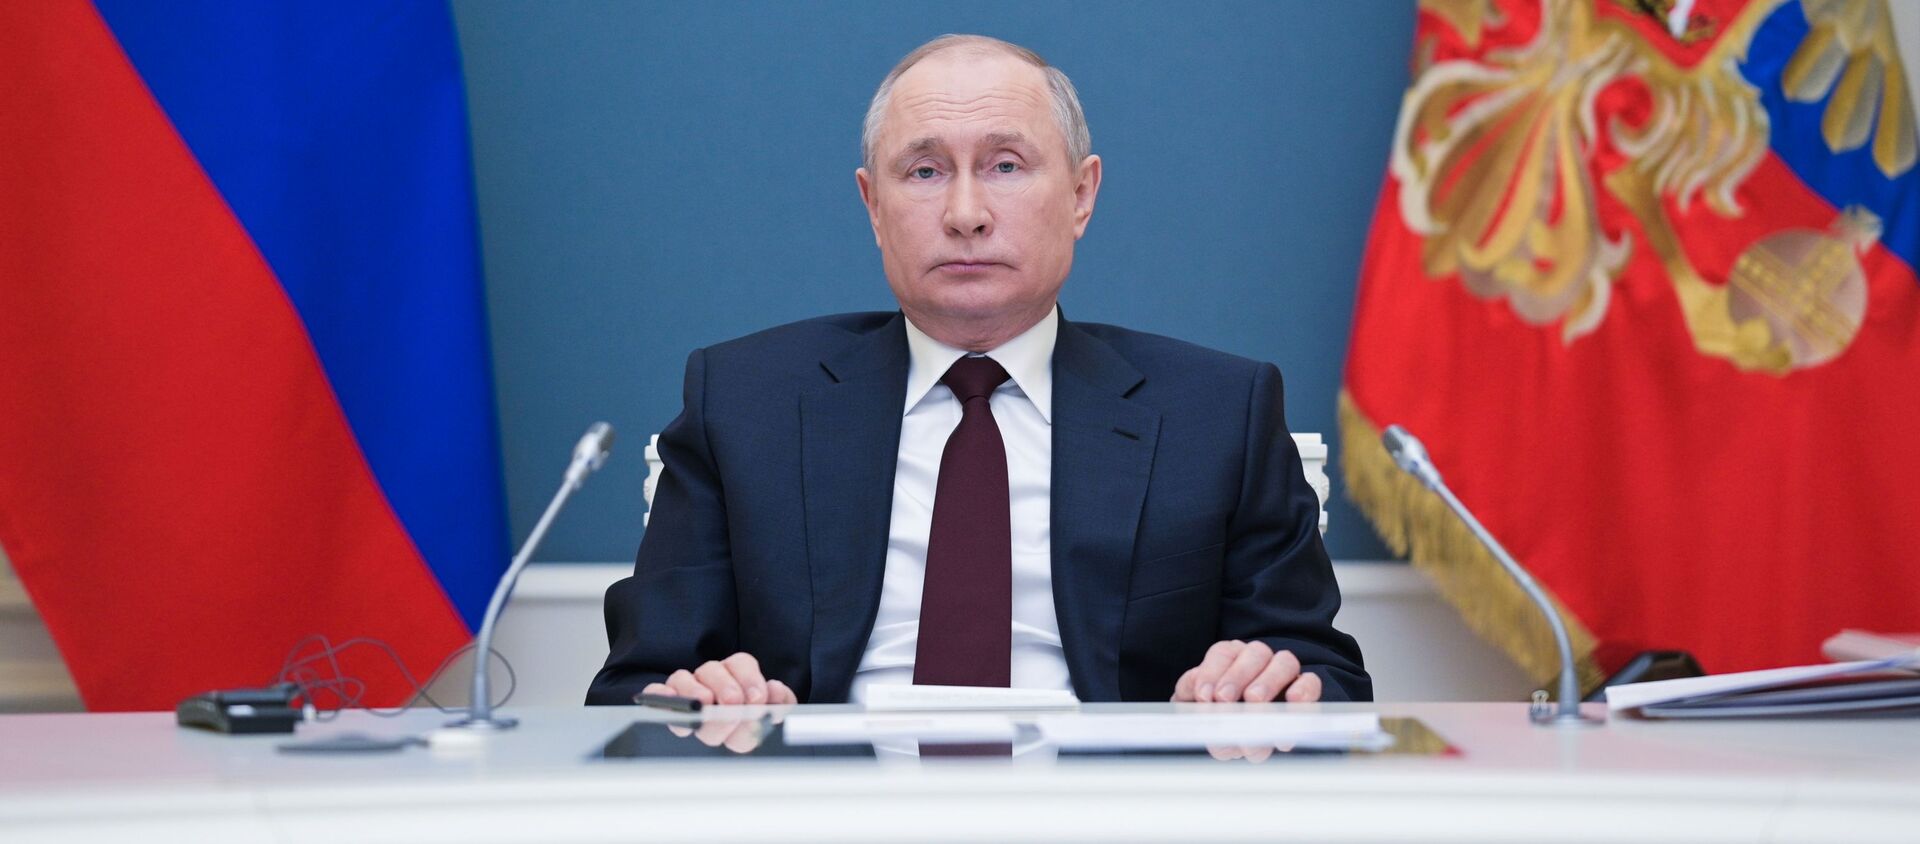  الرئيس الروسي فلاديمير بوتين يشارك في قمة المناخ عبر الإنترنت، موسكو، روسيا 22 أبريل 2021 - سبوتنيك عربي, 1920, 29.04.2021